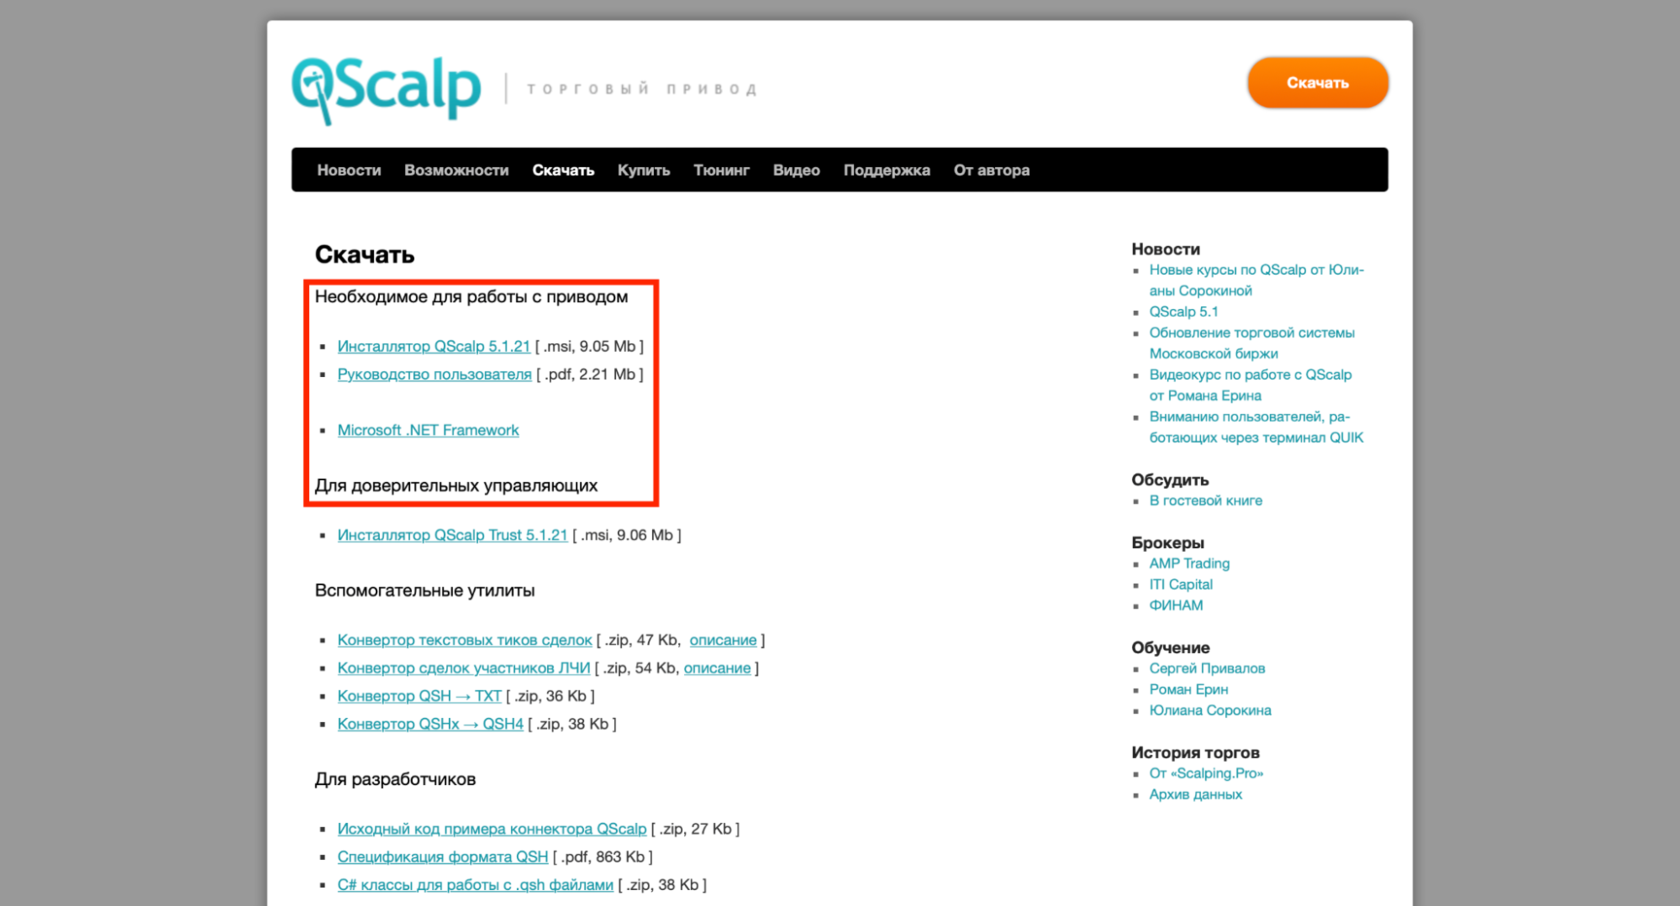 Официальный сайт QScalp, инсталлятор для скачивания QScalp на компьютер